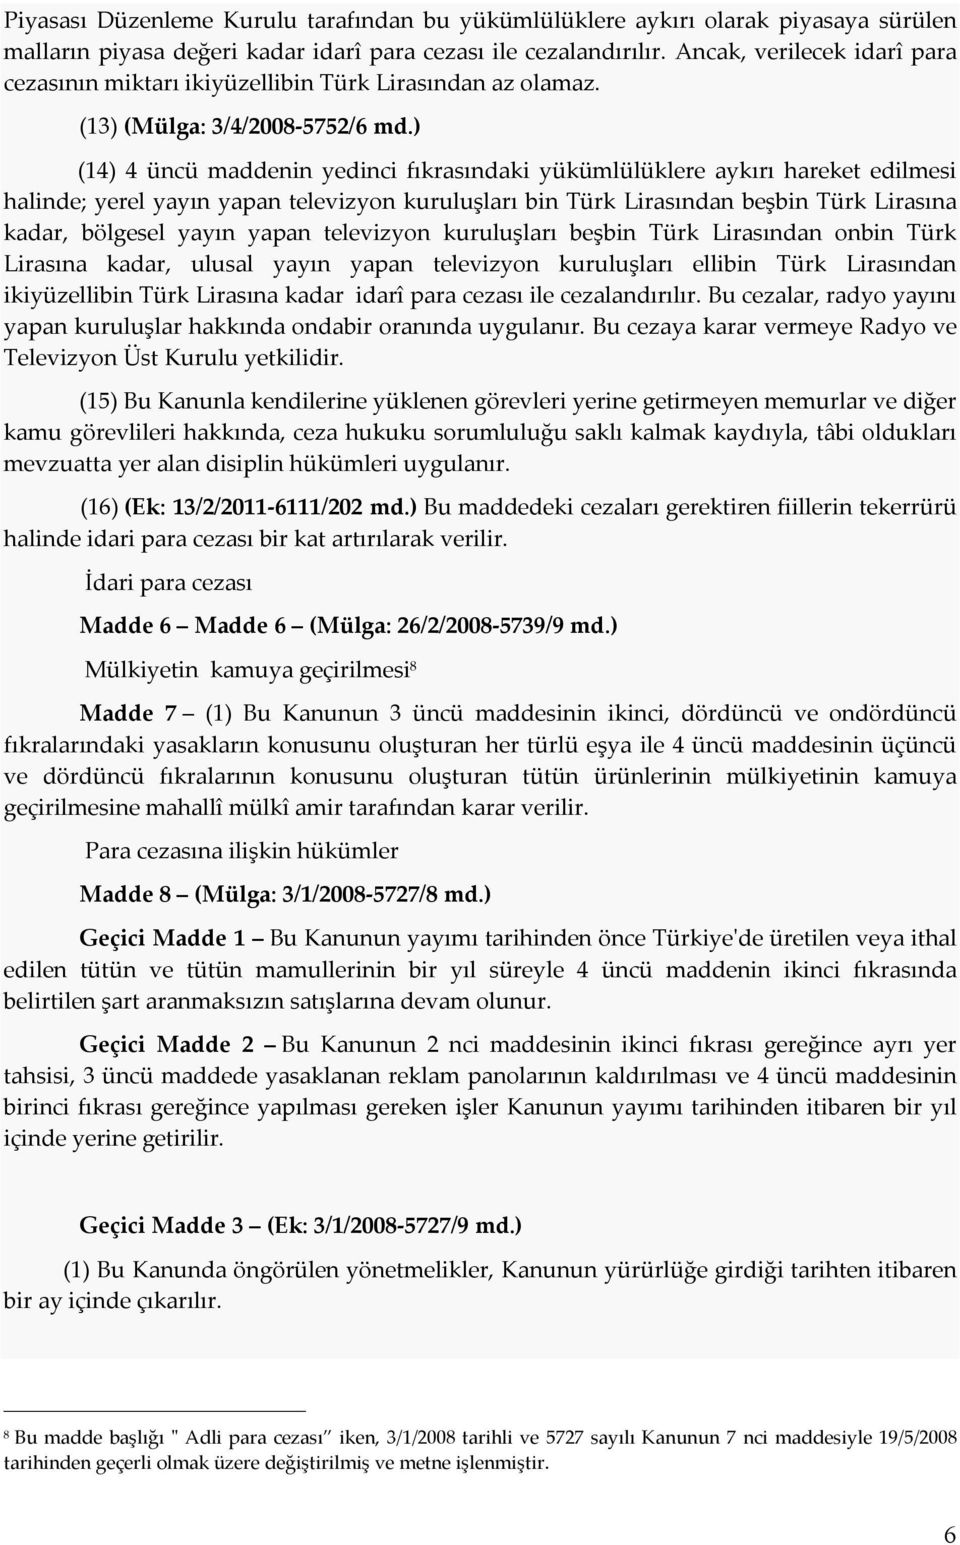 ) (14) 4 üncü maddenin yedinci fıkrasındaki yükümlülüklere aykırı hareket edilmesi halinde; yerel yayın yapan televizyon kuruluşları bin Türk Lirasından beşbin Türk Lirasına kadar, bölgesel yayın